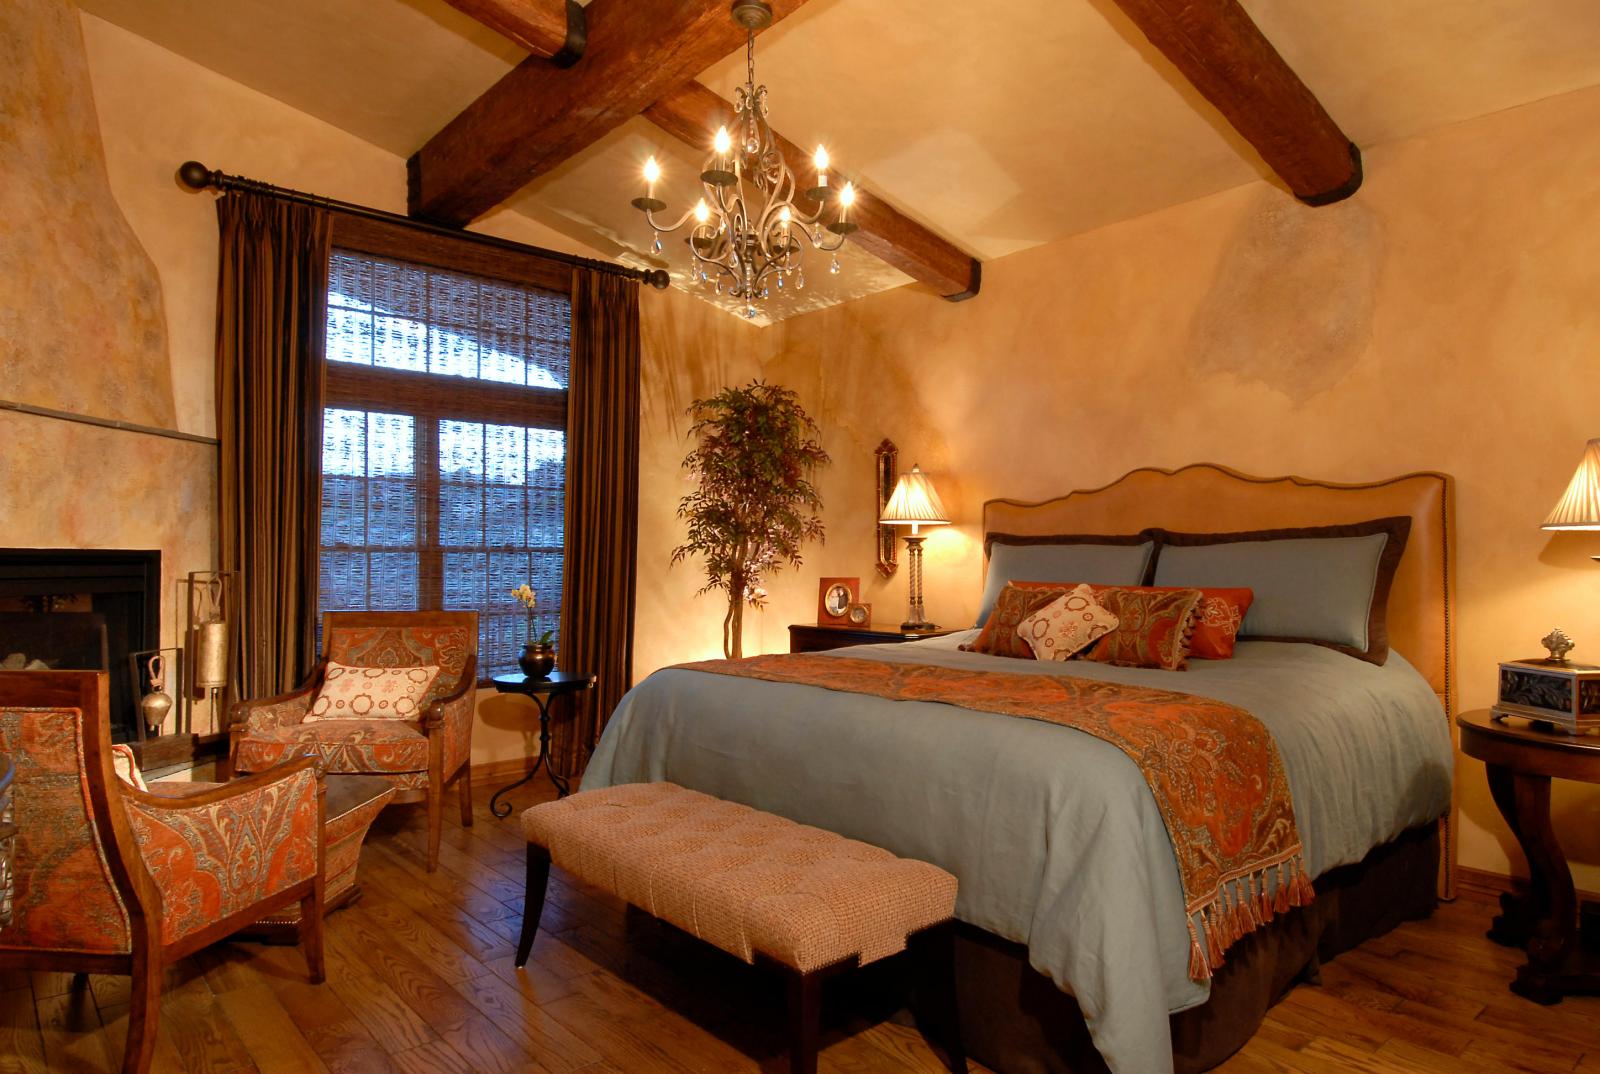 Hình ảnh phòng ngủ sử dụng tông màu nóng ấm áp, dầm gỗ, cửa sổ cao rộng